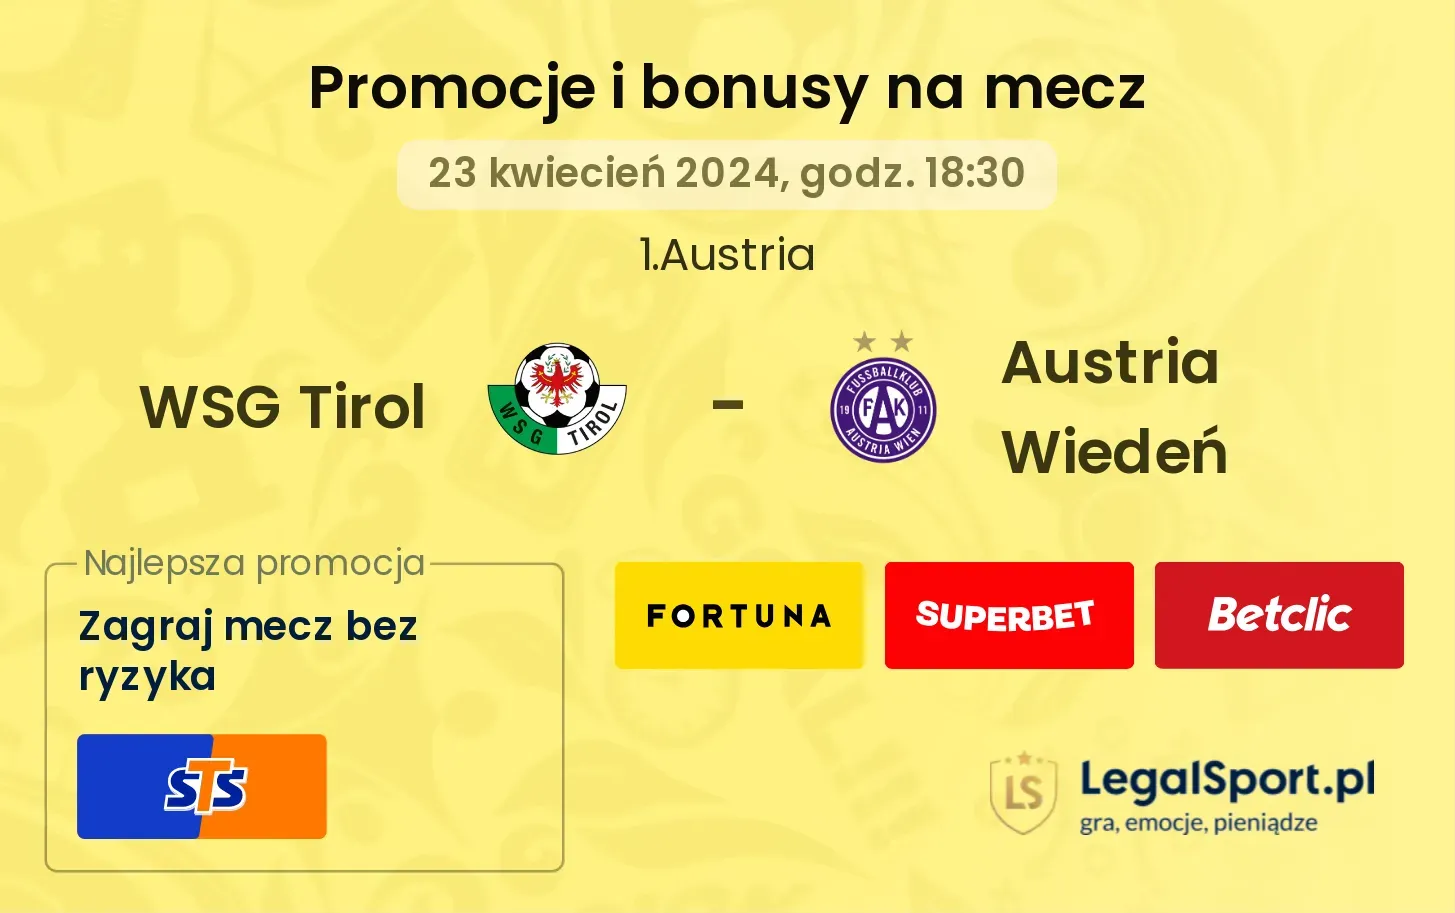 WSG Tirol - Austria Wiedeń promocje bonusy na mecz